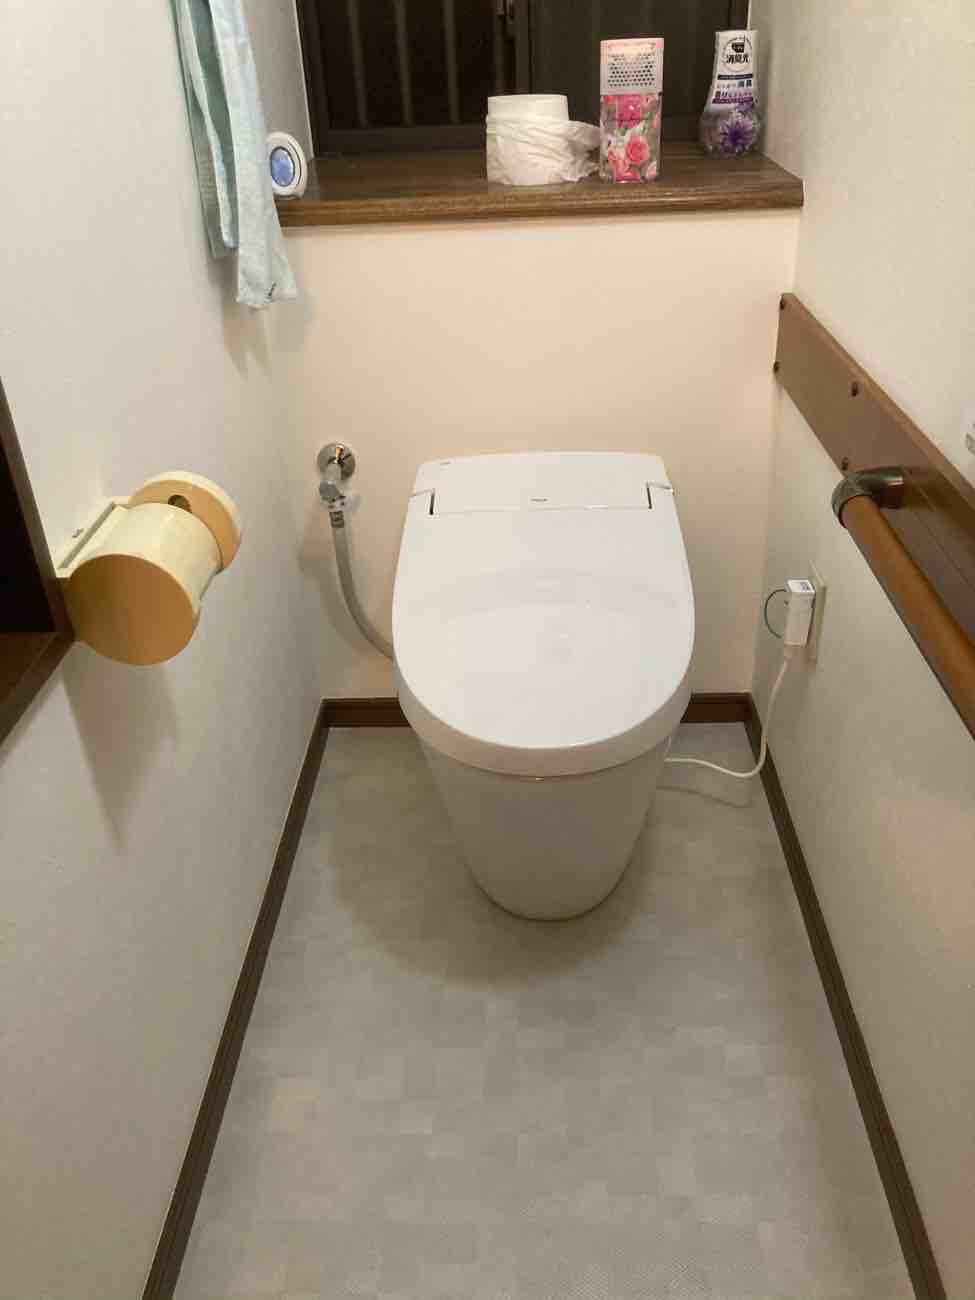 【埼玉県吉川市】O様邸トイレ交換工事が完了しました。LIXILサティスS 画像